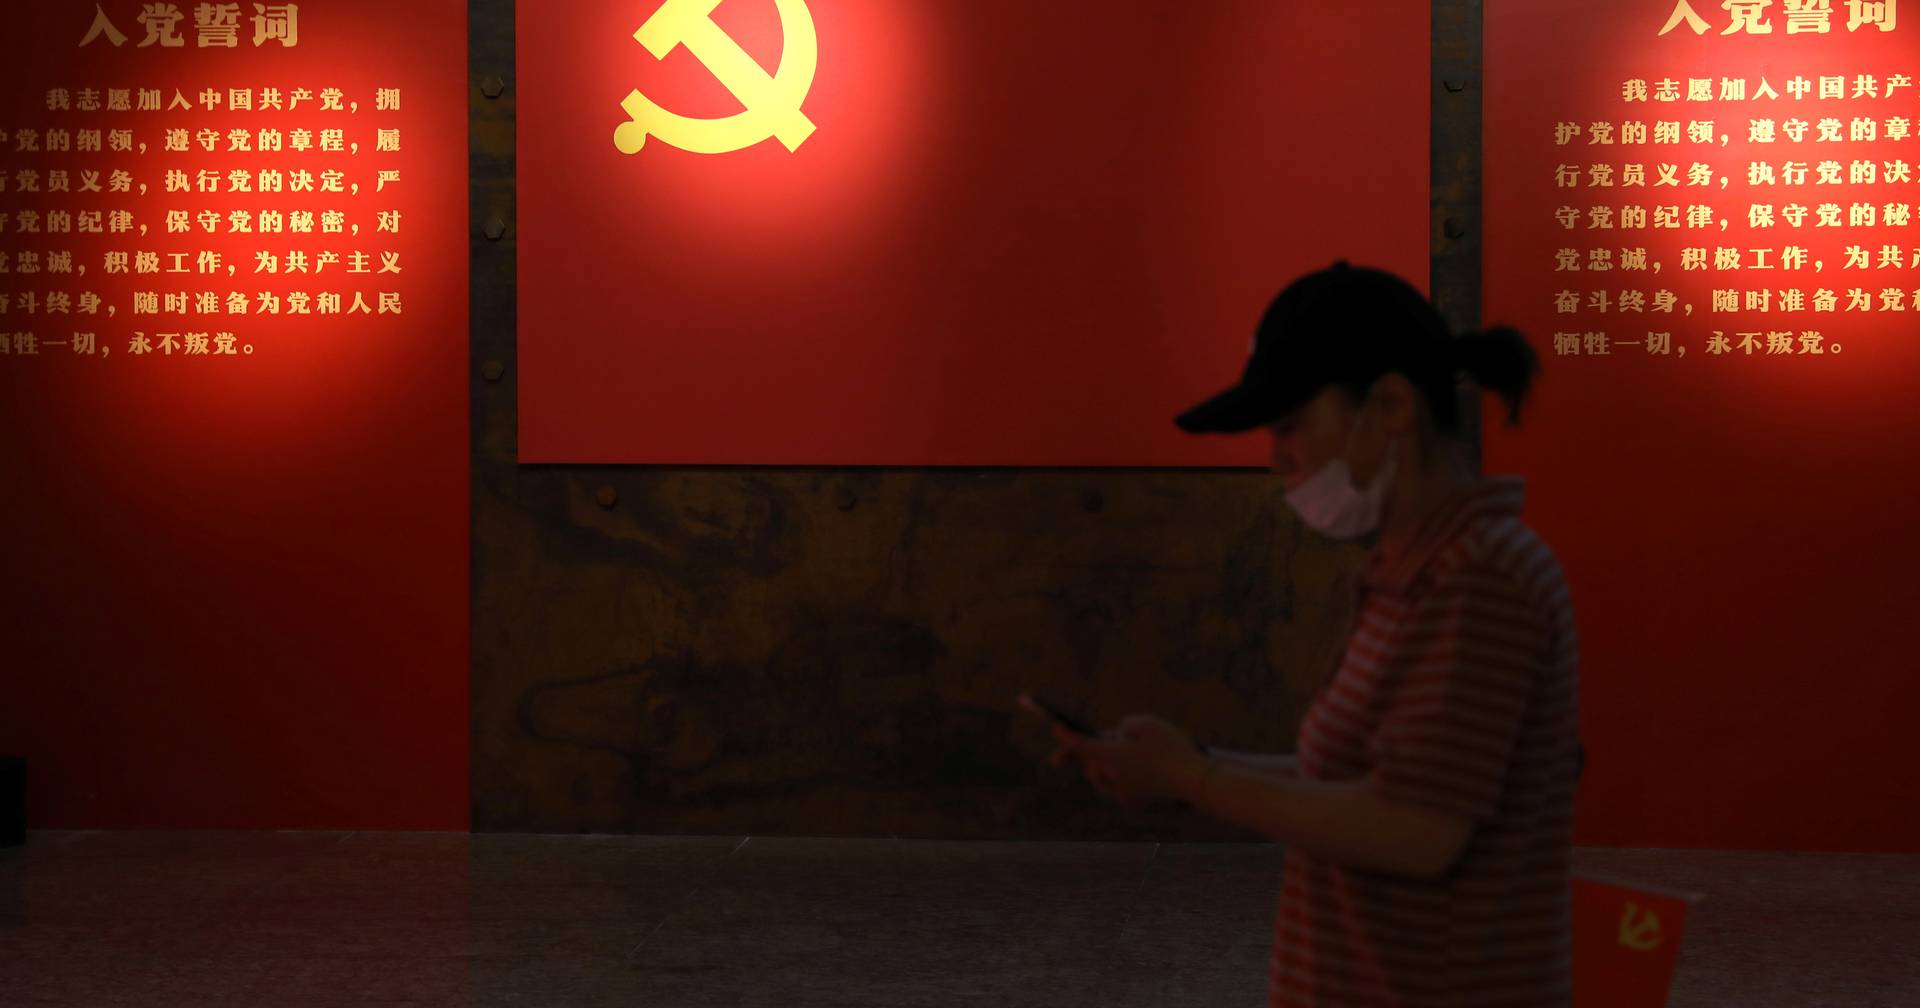 Estilos de vida “hedonistas” y “lujosos”: el Partido Comunista Chino apunta al sector financiero